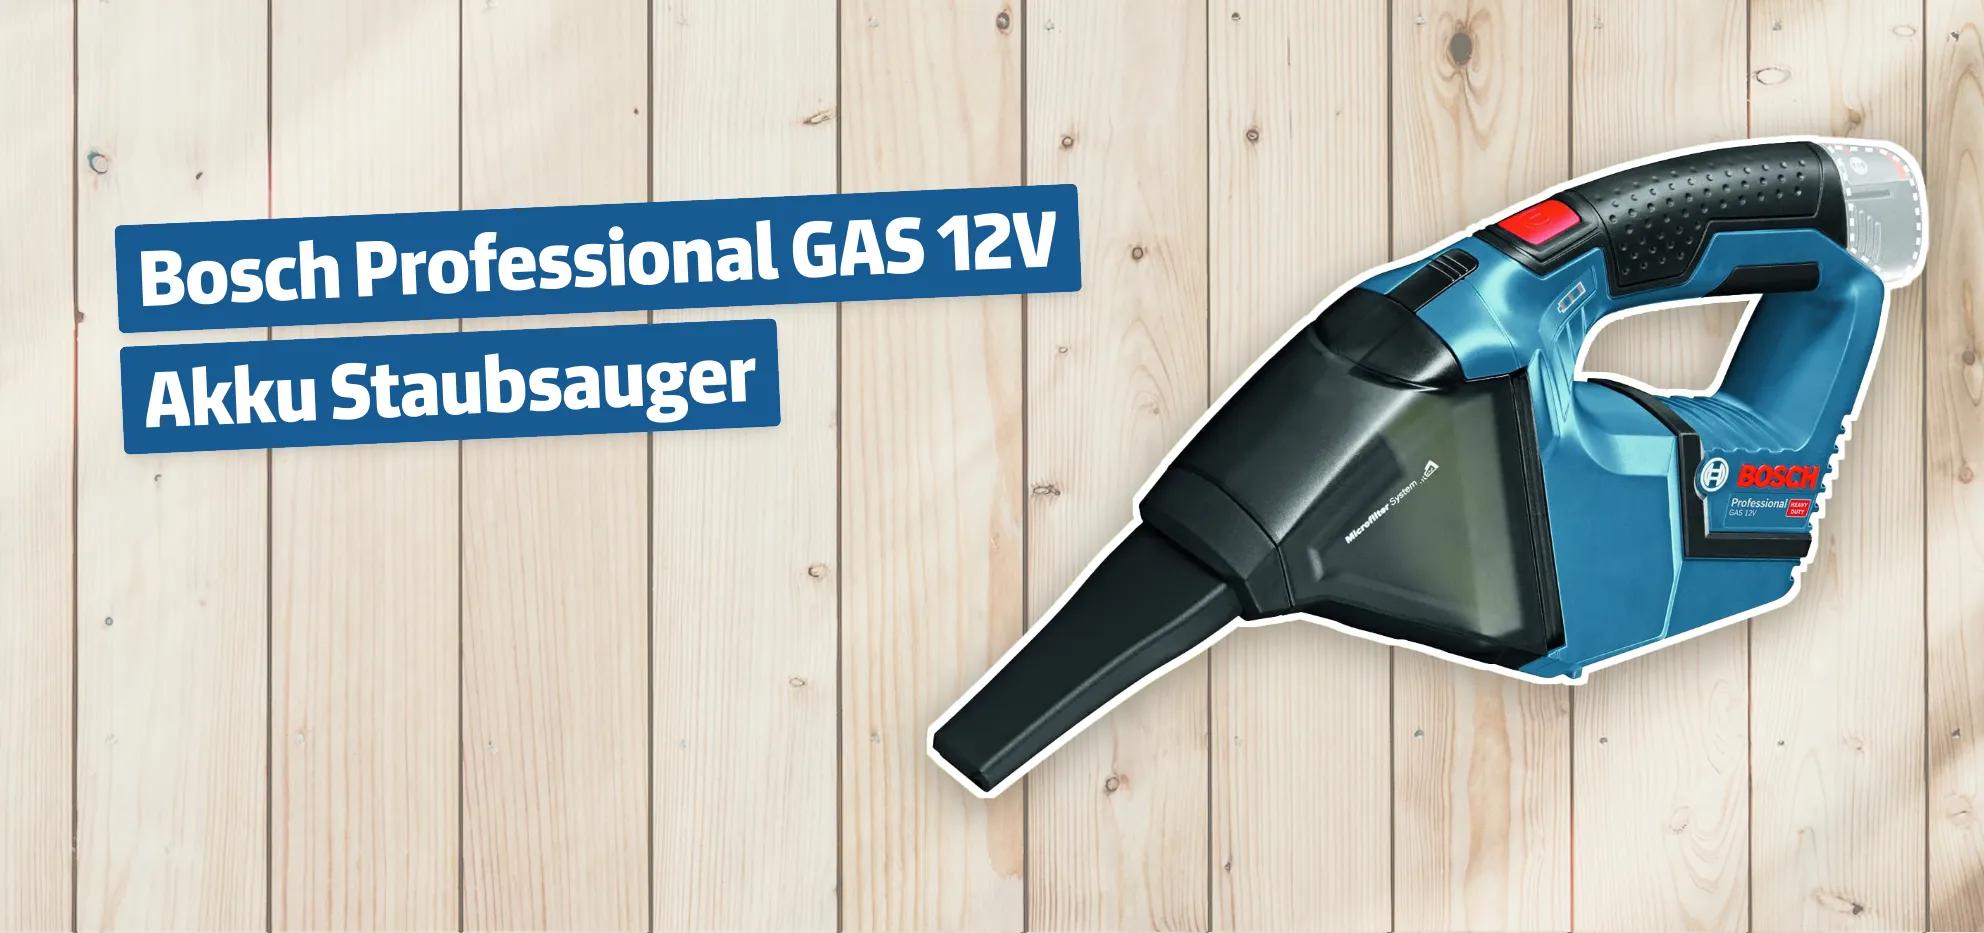 Bosch Professional GAS 12V Akku Staubsauger